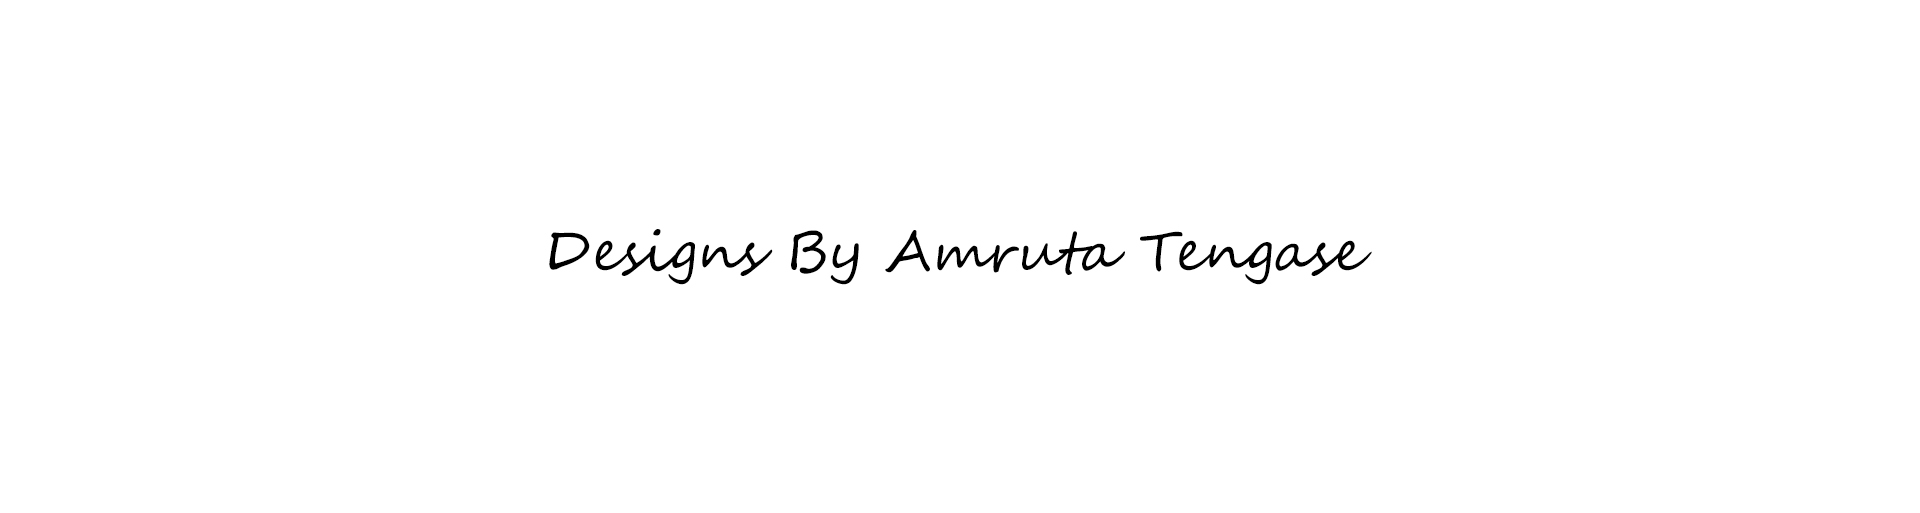 Amruta Tengase